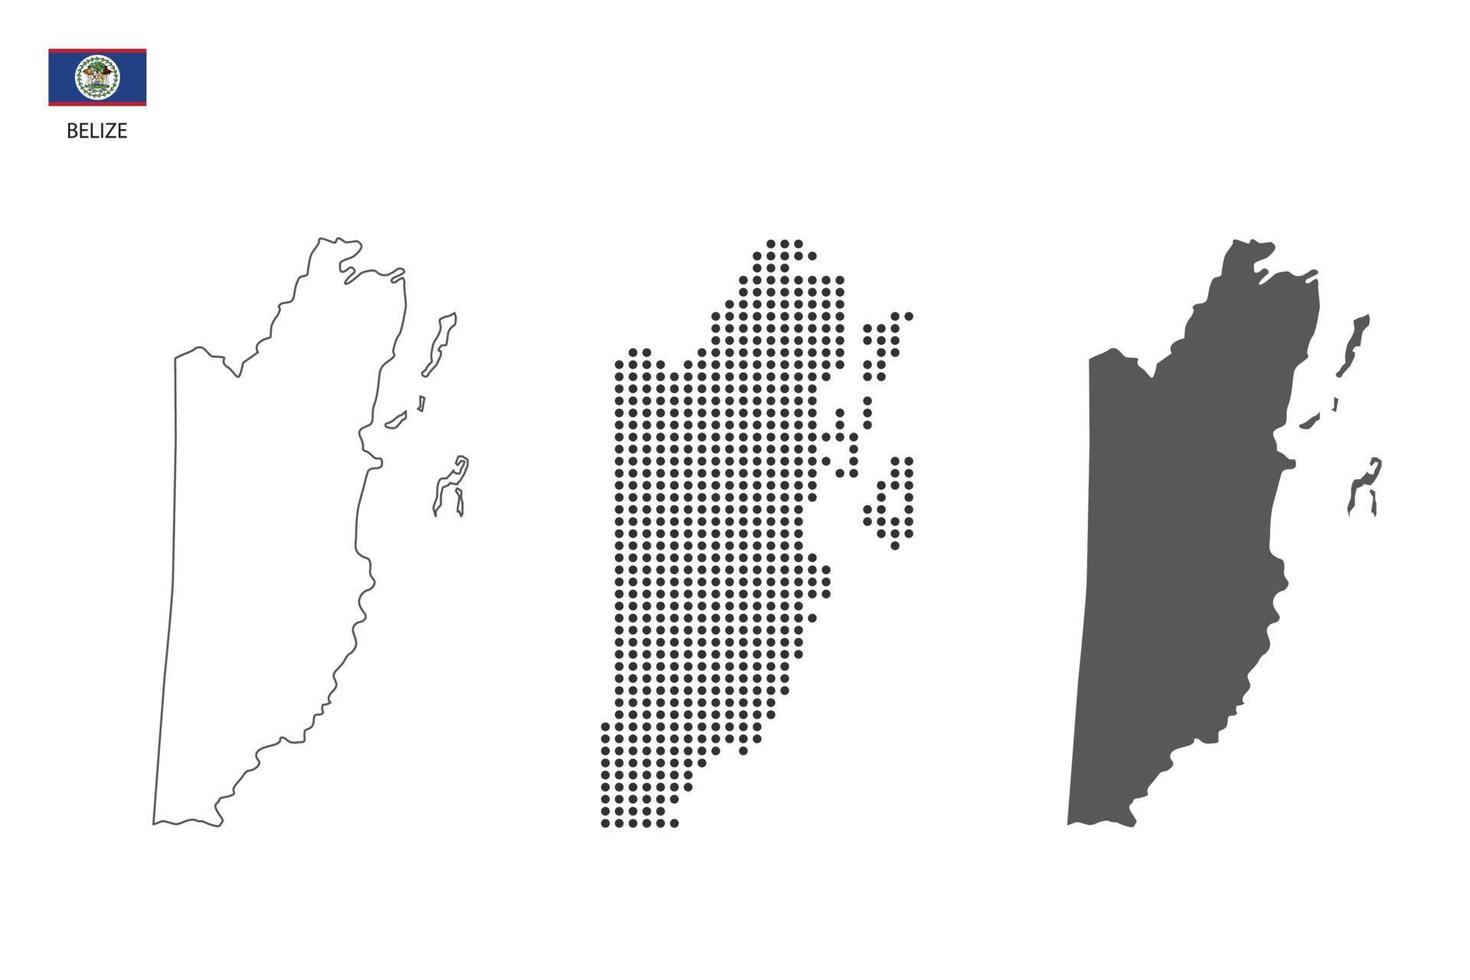 3 versiones del vector de la ciudad del mapa de belice por estilo de simplicidad de contorno negro delgado, estilo de punto negro y estilo de sombra oscura. todo en el fondo blanco.